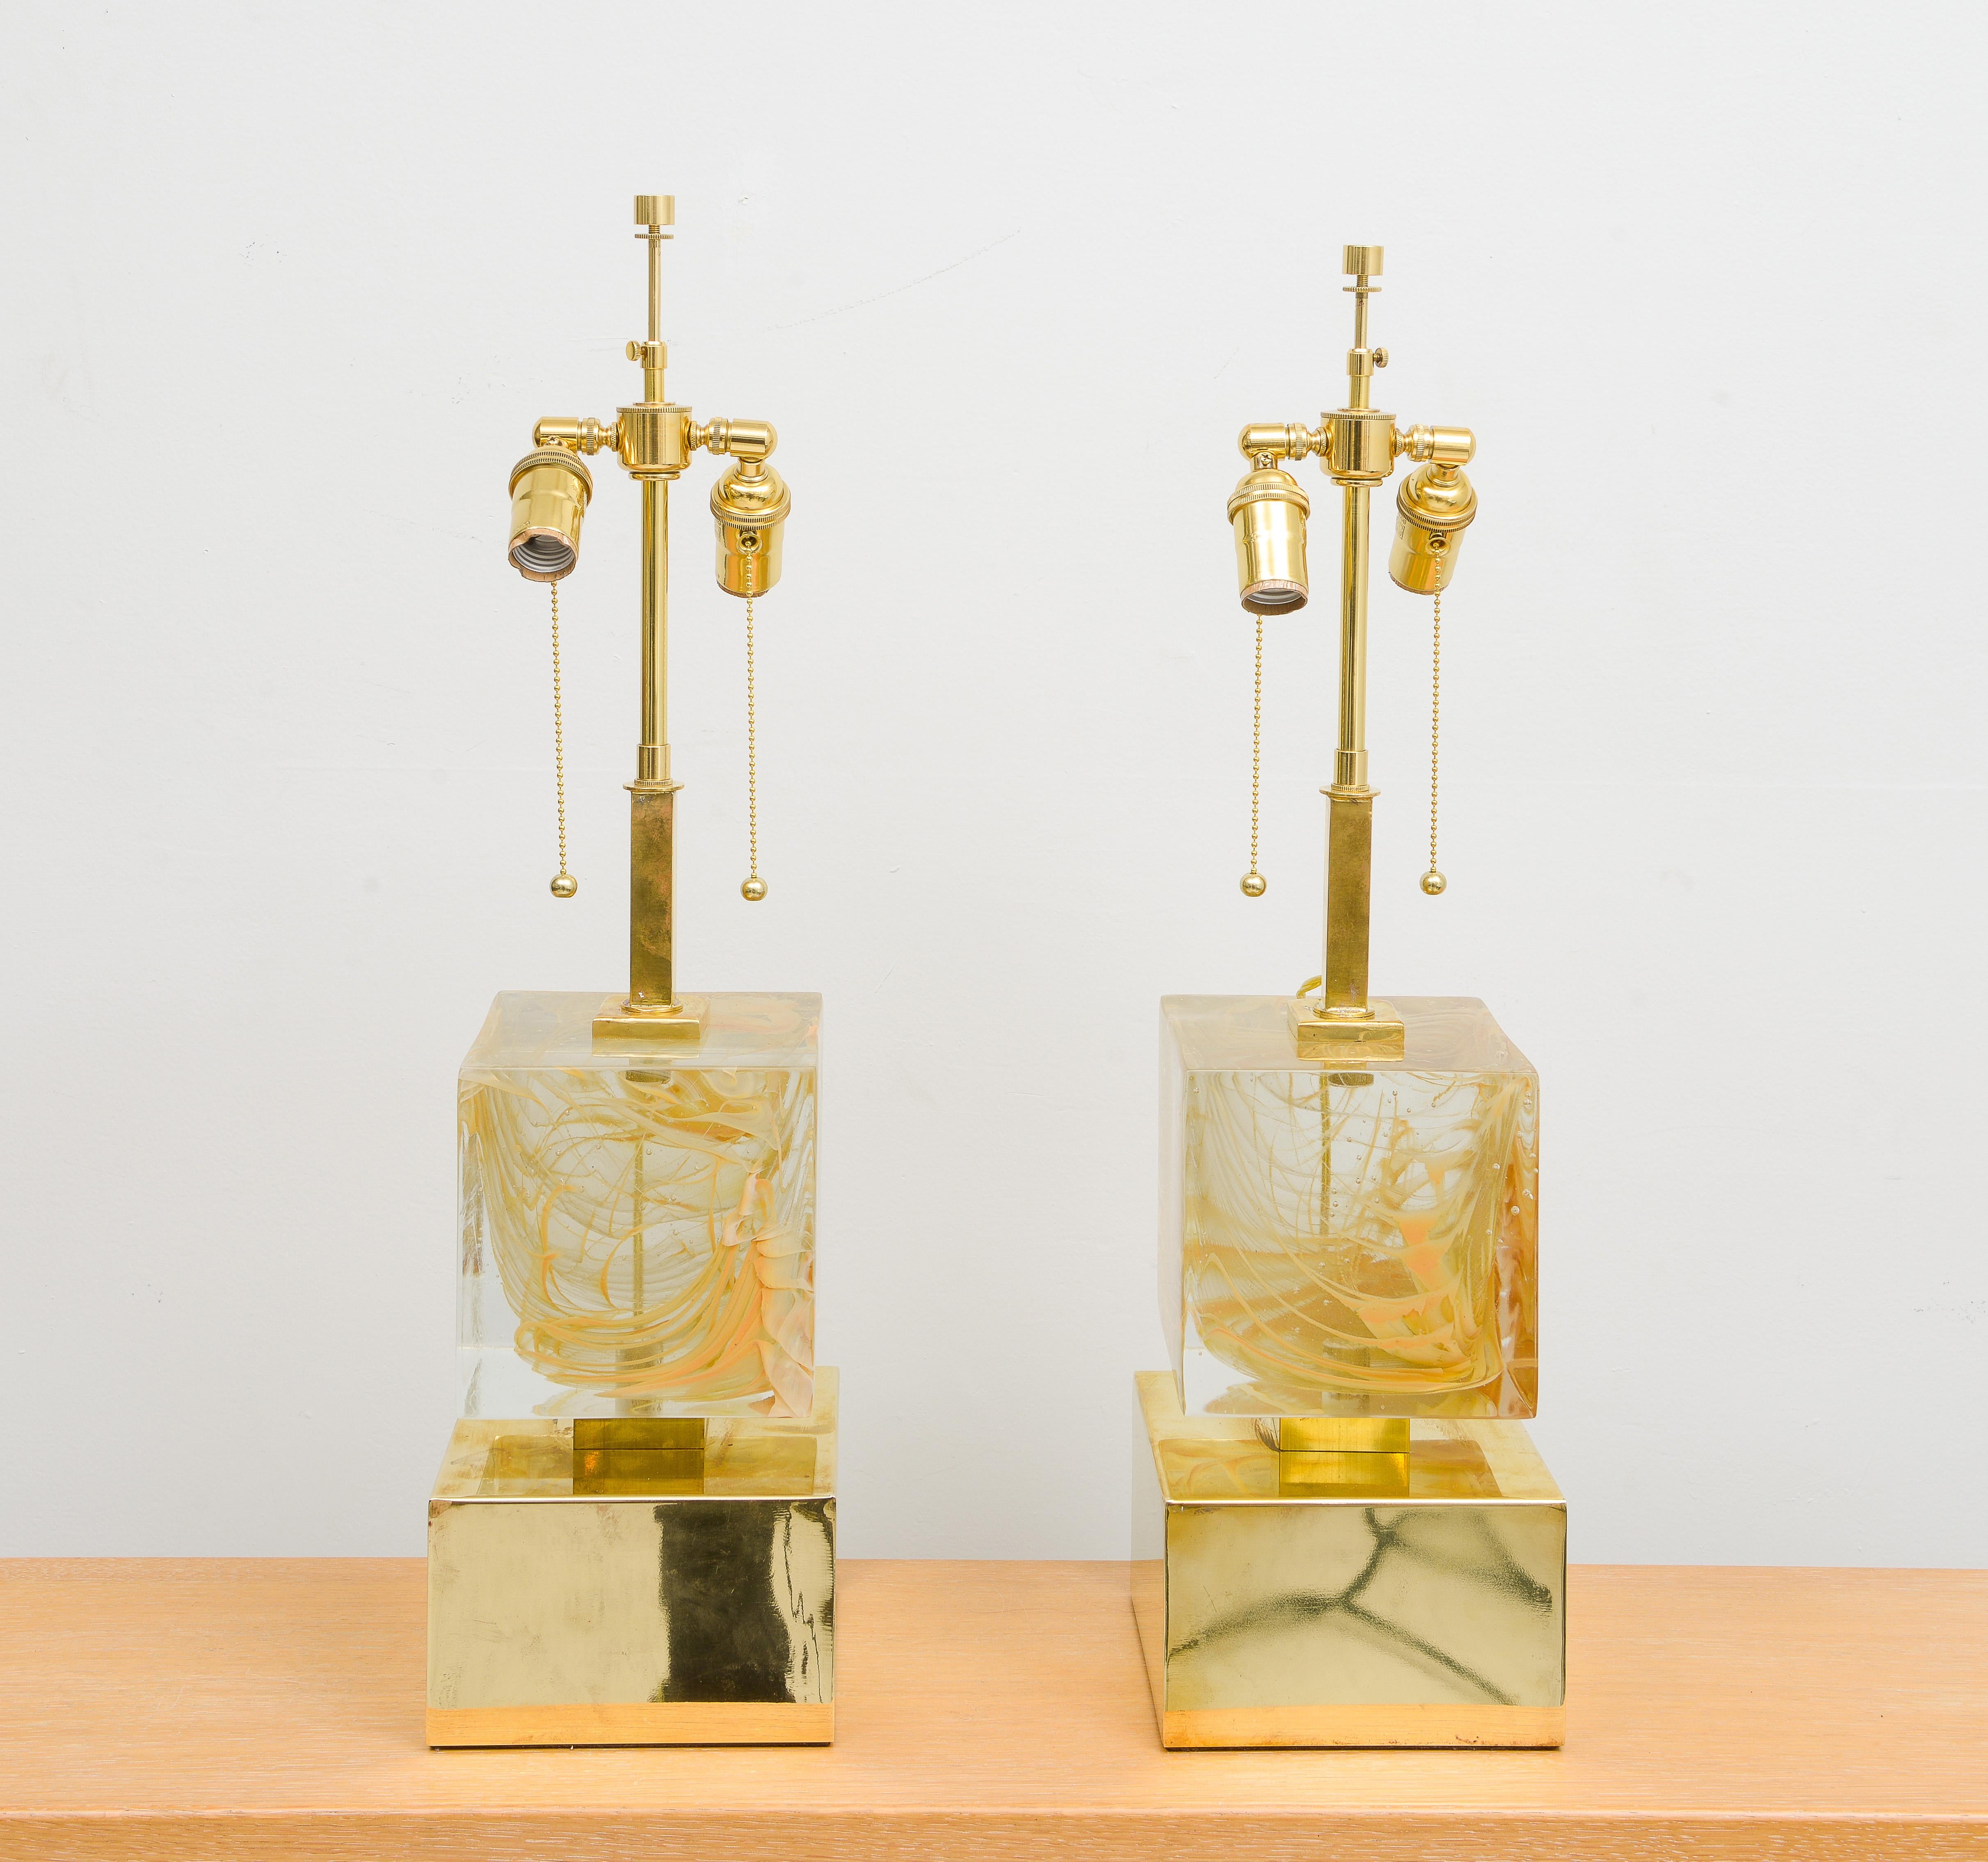 Maßgeschneidertes Paar skulpturaler Murano-Glaslampen auf Messingfuß.
Satz von 2. Diese Lampen können angepasst werden. Die Lampenschirme sind nicht enthalten.
Die Basis ist quadratisch B 7